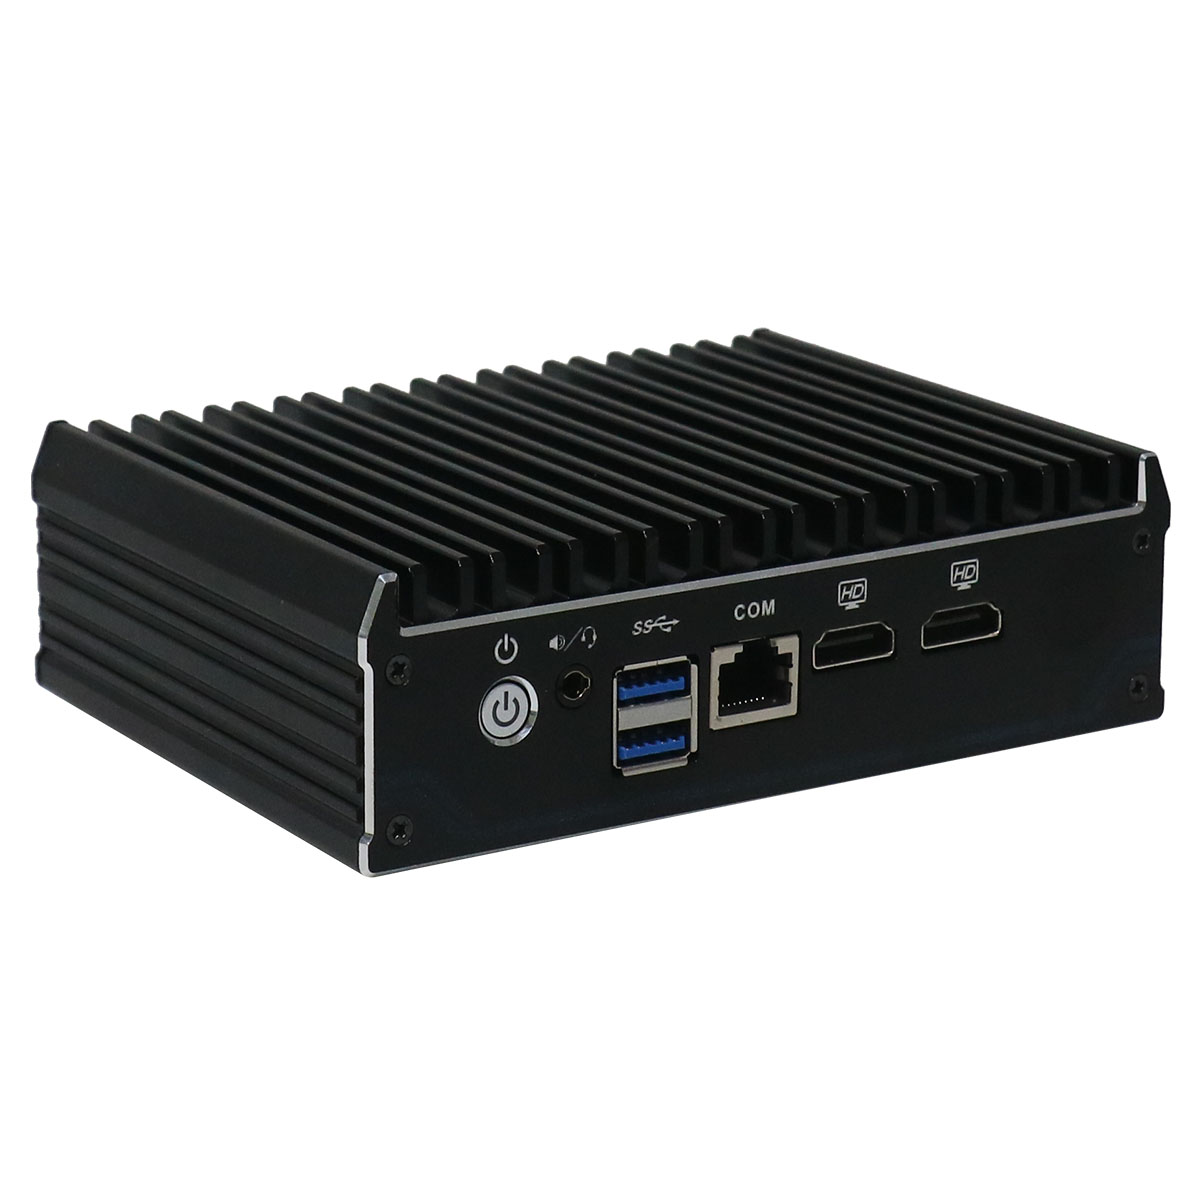 Partaker C3 Intel AES-NI J3160 PfSense Mini PC Server with 4 LAN